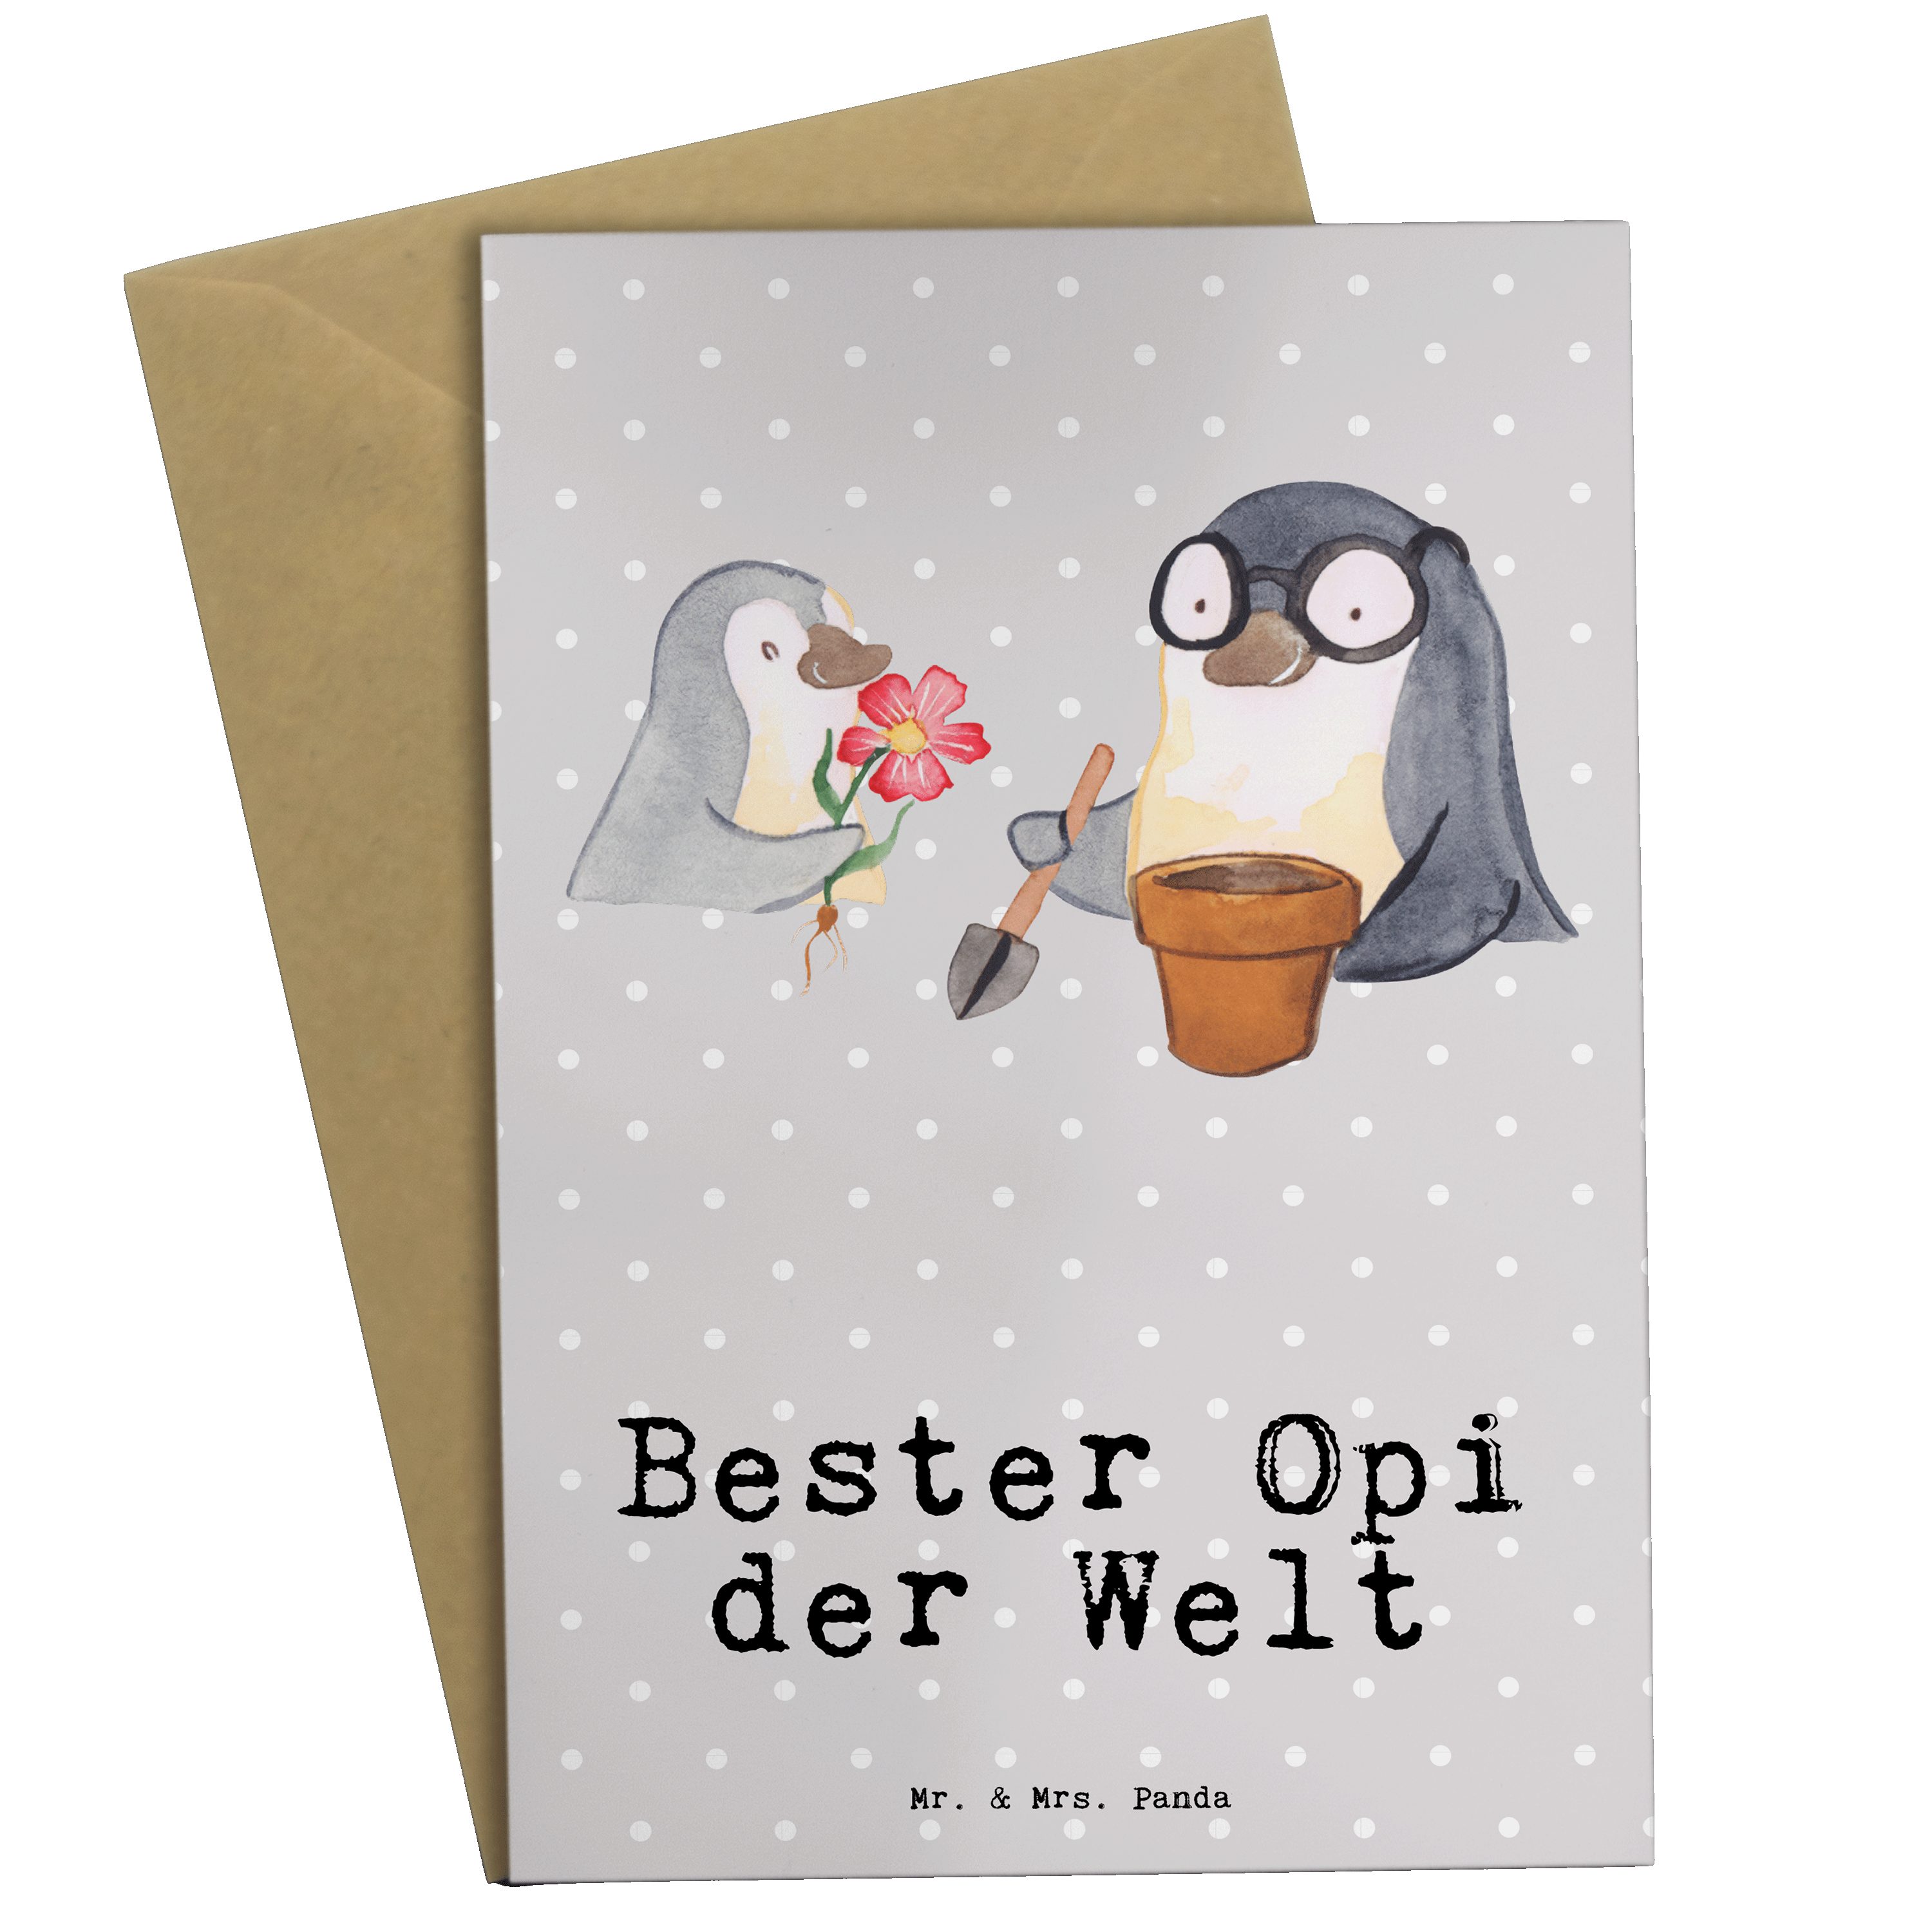 Mr. & Mrs. Panda Grußkarte Pinguin Bester Opi der Welt - Grau Pastell - Geschenk, Oppi, Hochzeit